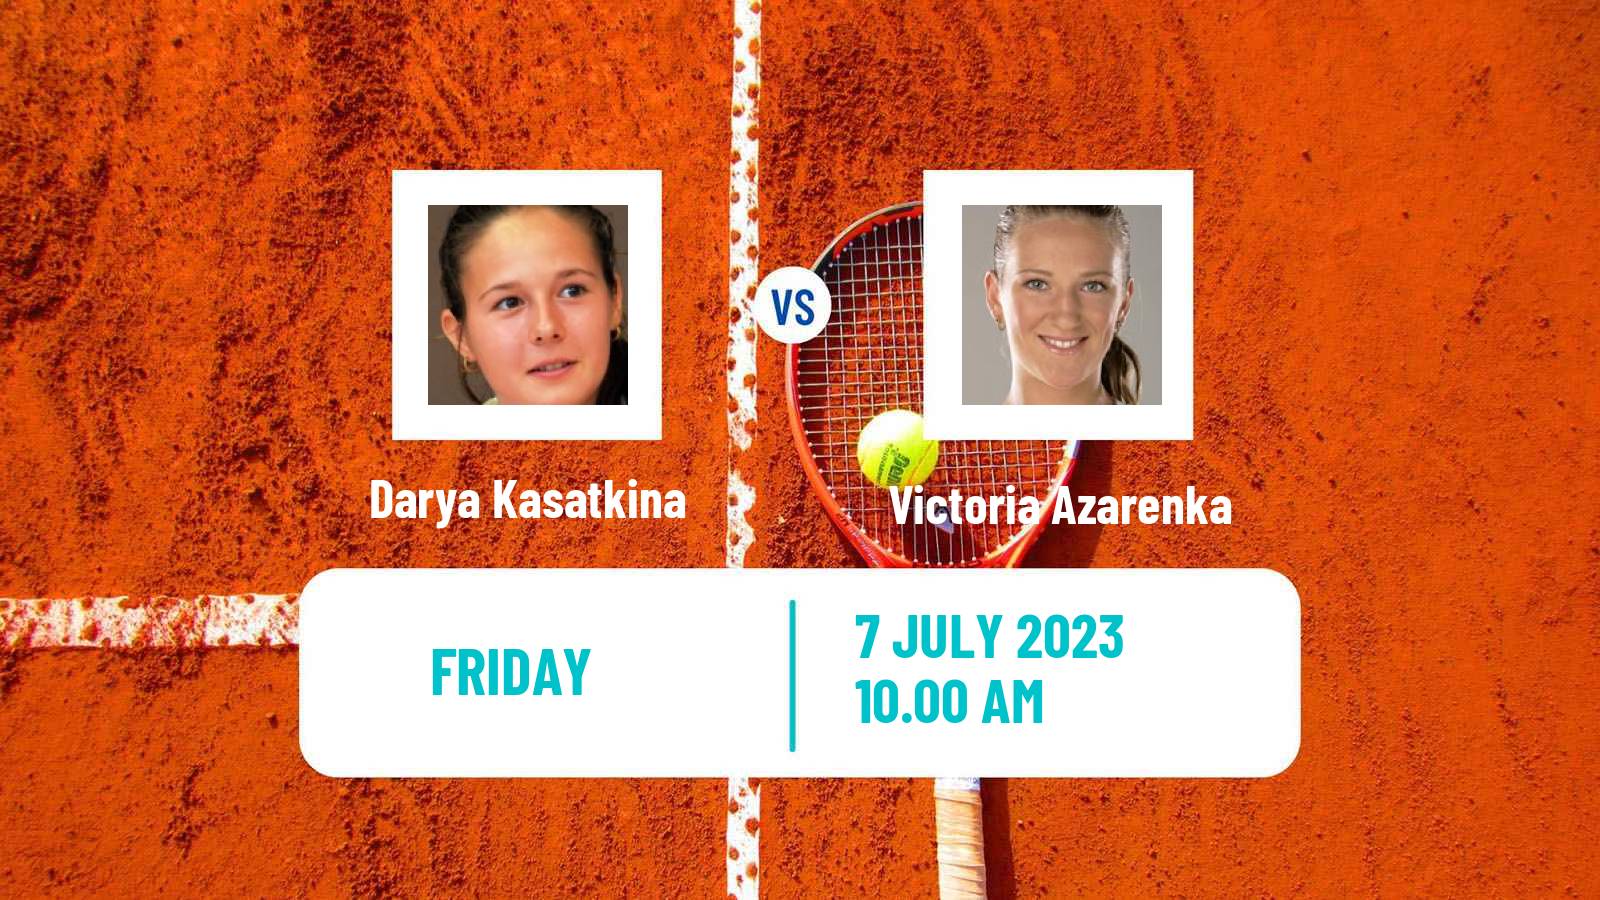 Tennis WTA Wimbledon Darya Kasatkina - Victoria Azarenka